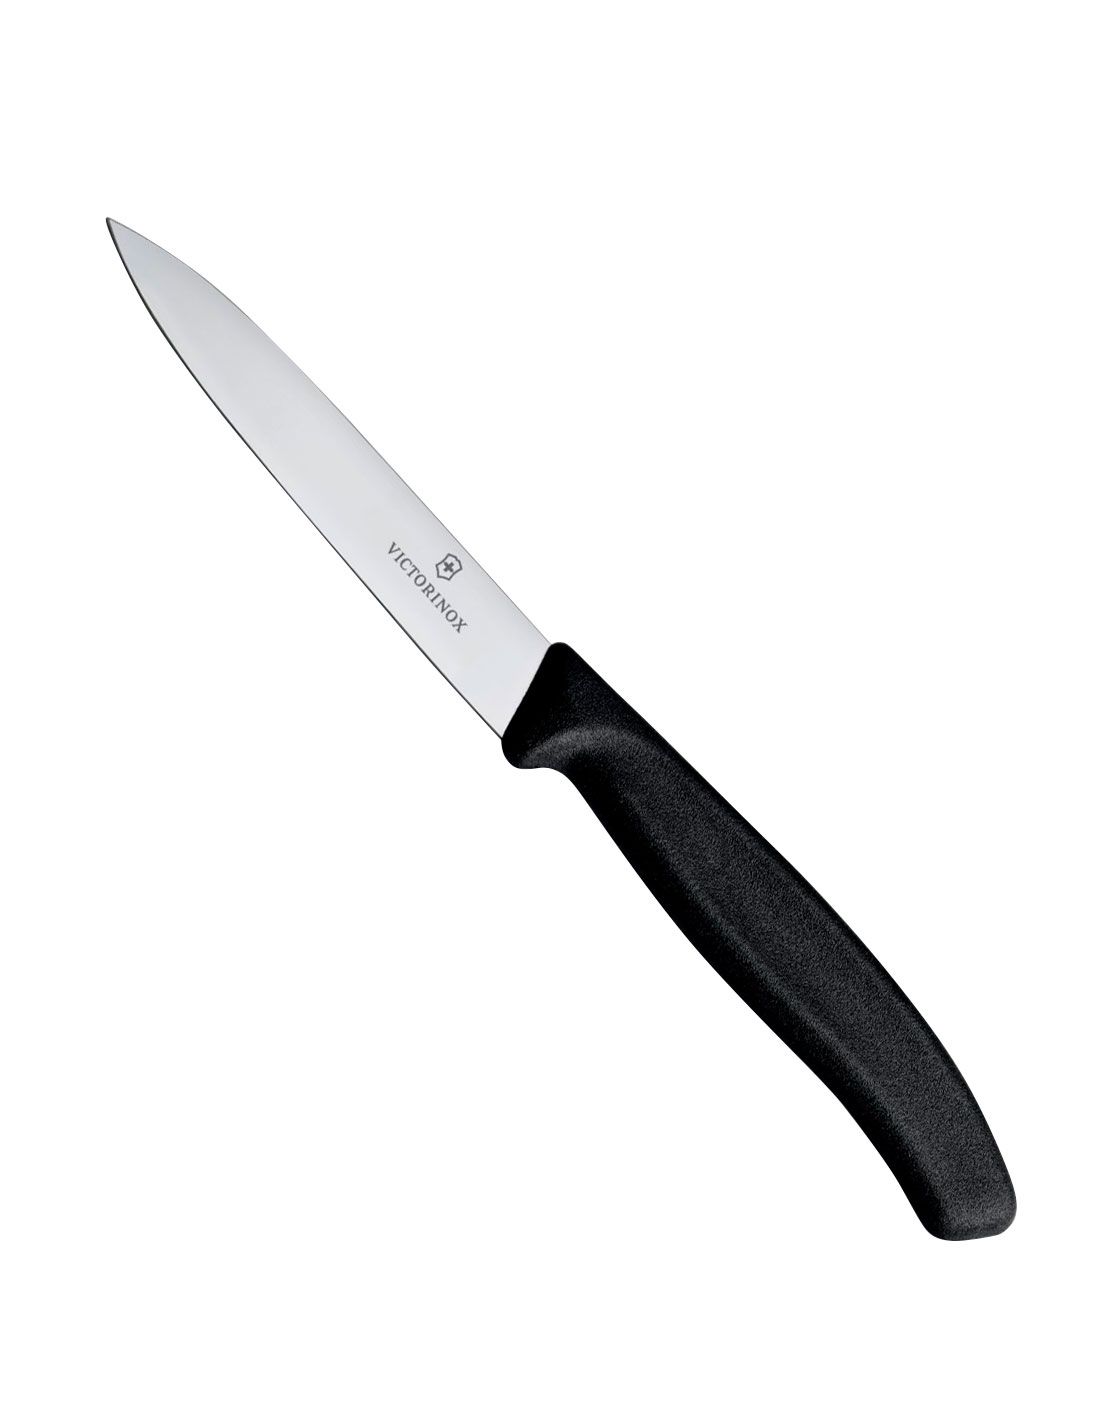 Victorinox - coltello per prosciutto lama cm 30 flessibile manico fibrox